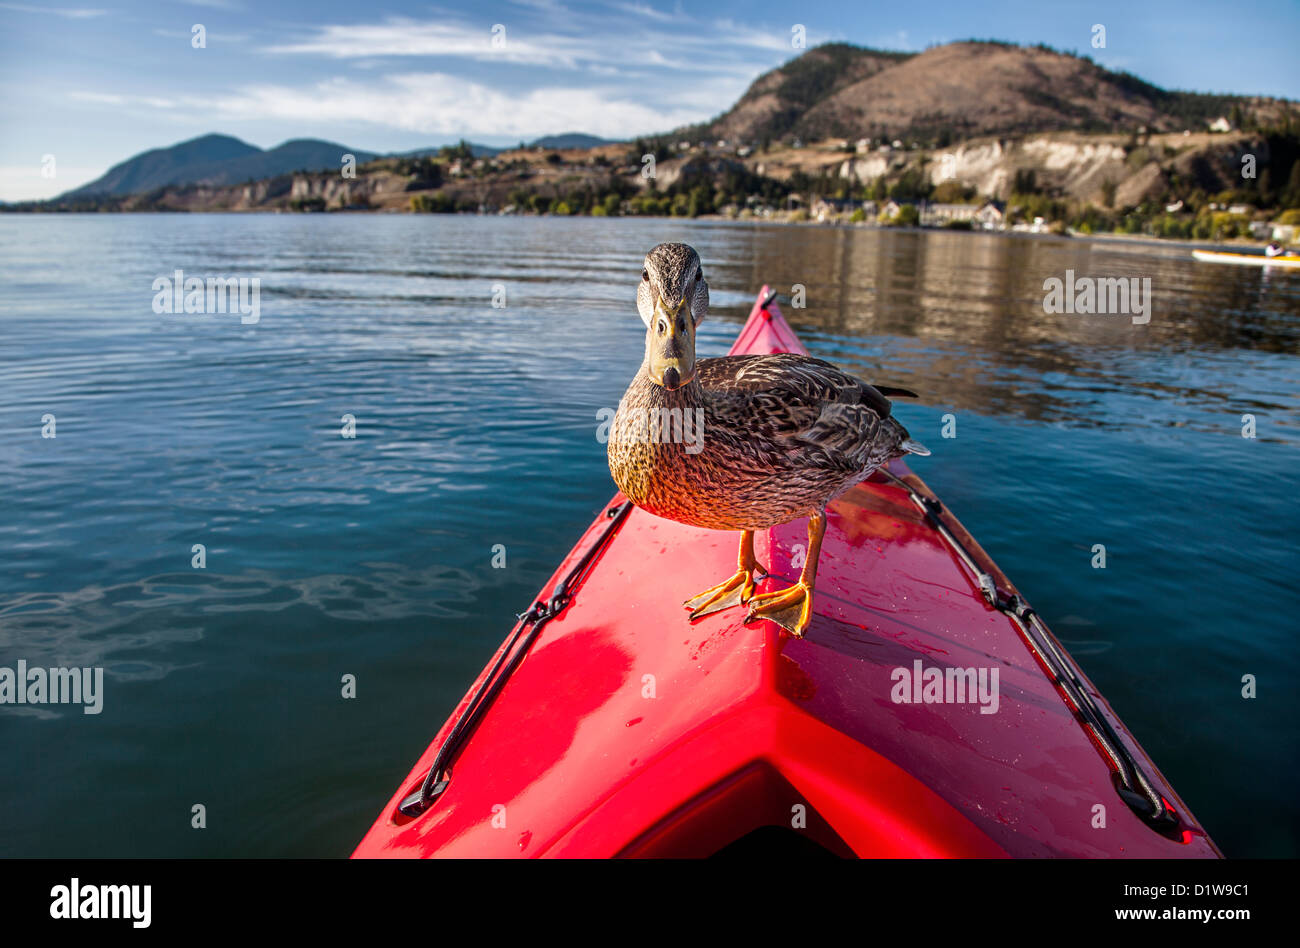 Une photo d'un canard debout sur la proue d'un kayak sur un lac rouge Banque D'Images